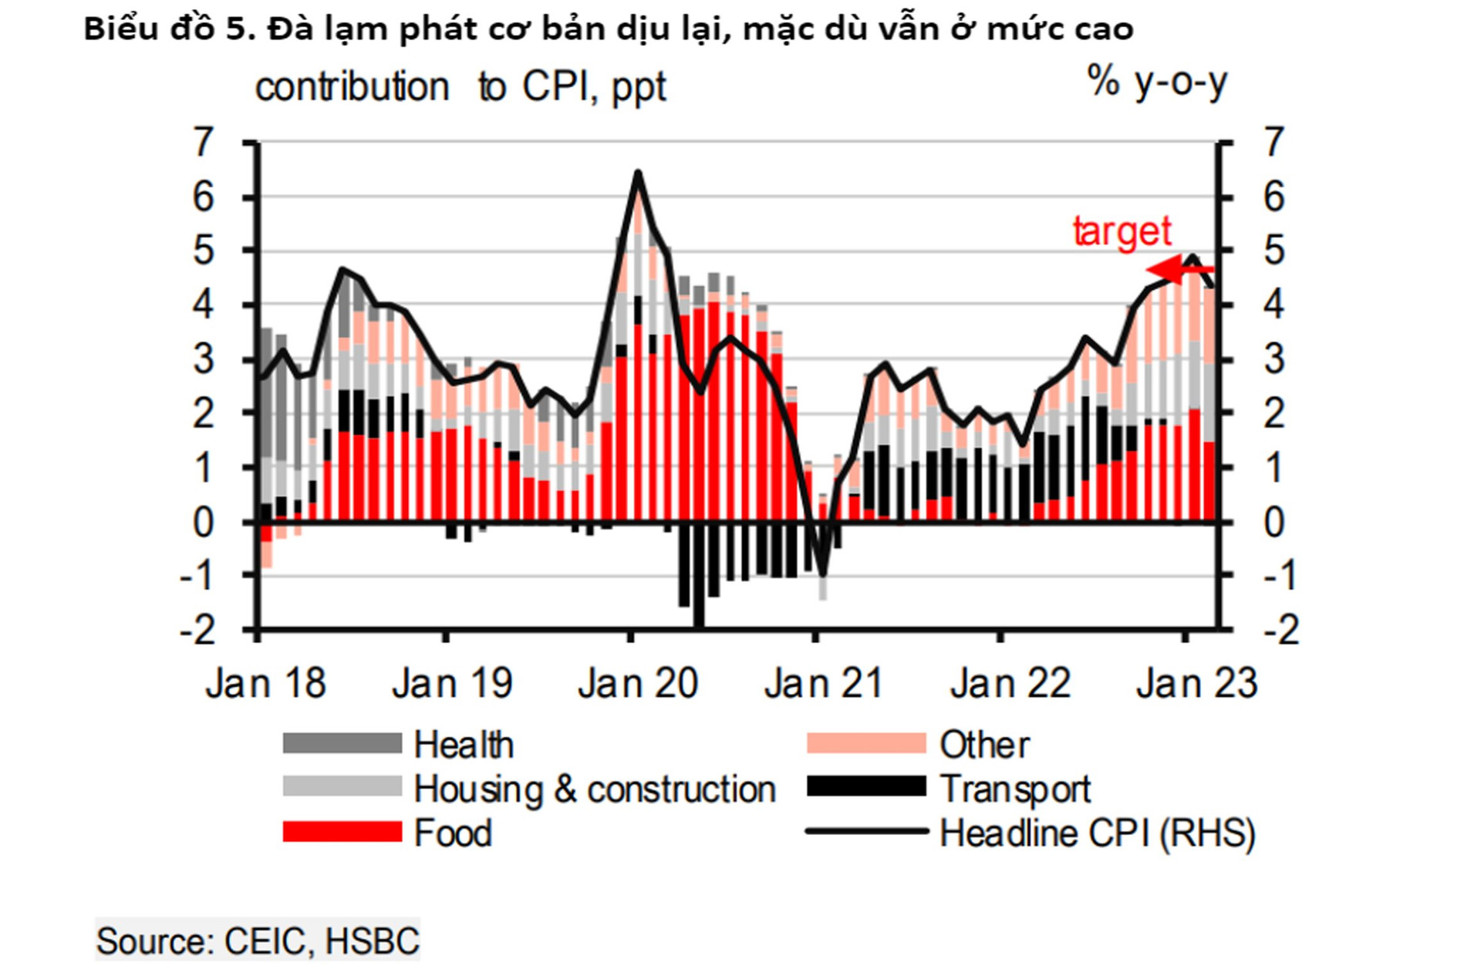 HSBC: Việt Nam vẫn thấy những cơ hội xuất hiện trong nghịch cảnh - Ảnh 3